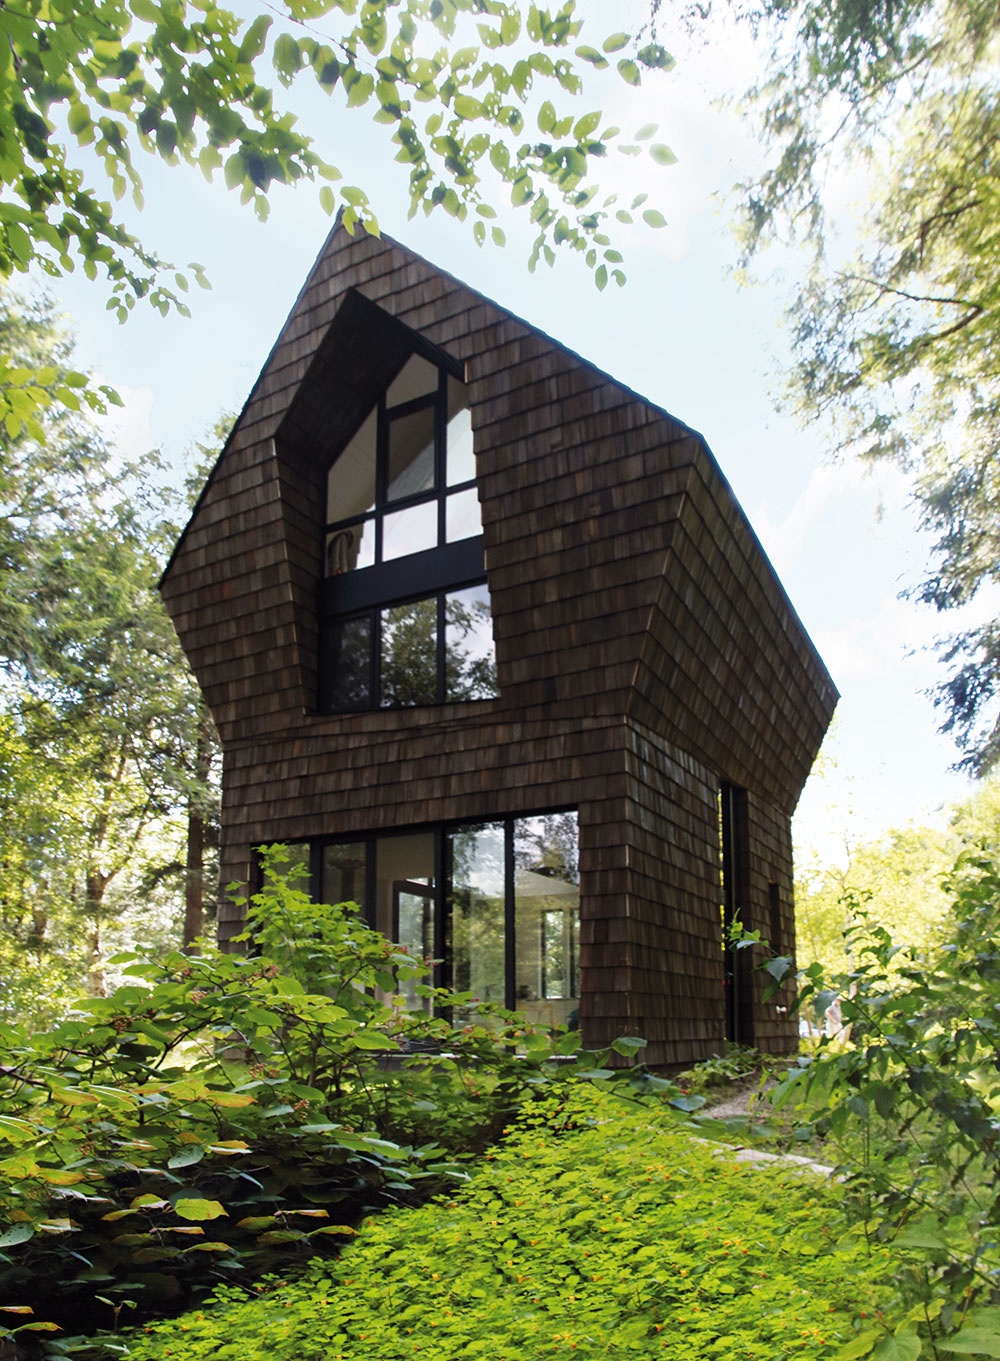 Prepojenie s lesom symbolizuje nielen výška a tvar domu, ale aj vonkajší obklad z tmavého cédru, ktorý sa podobá kôre.